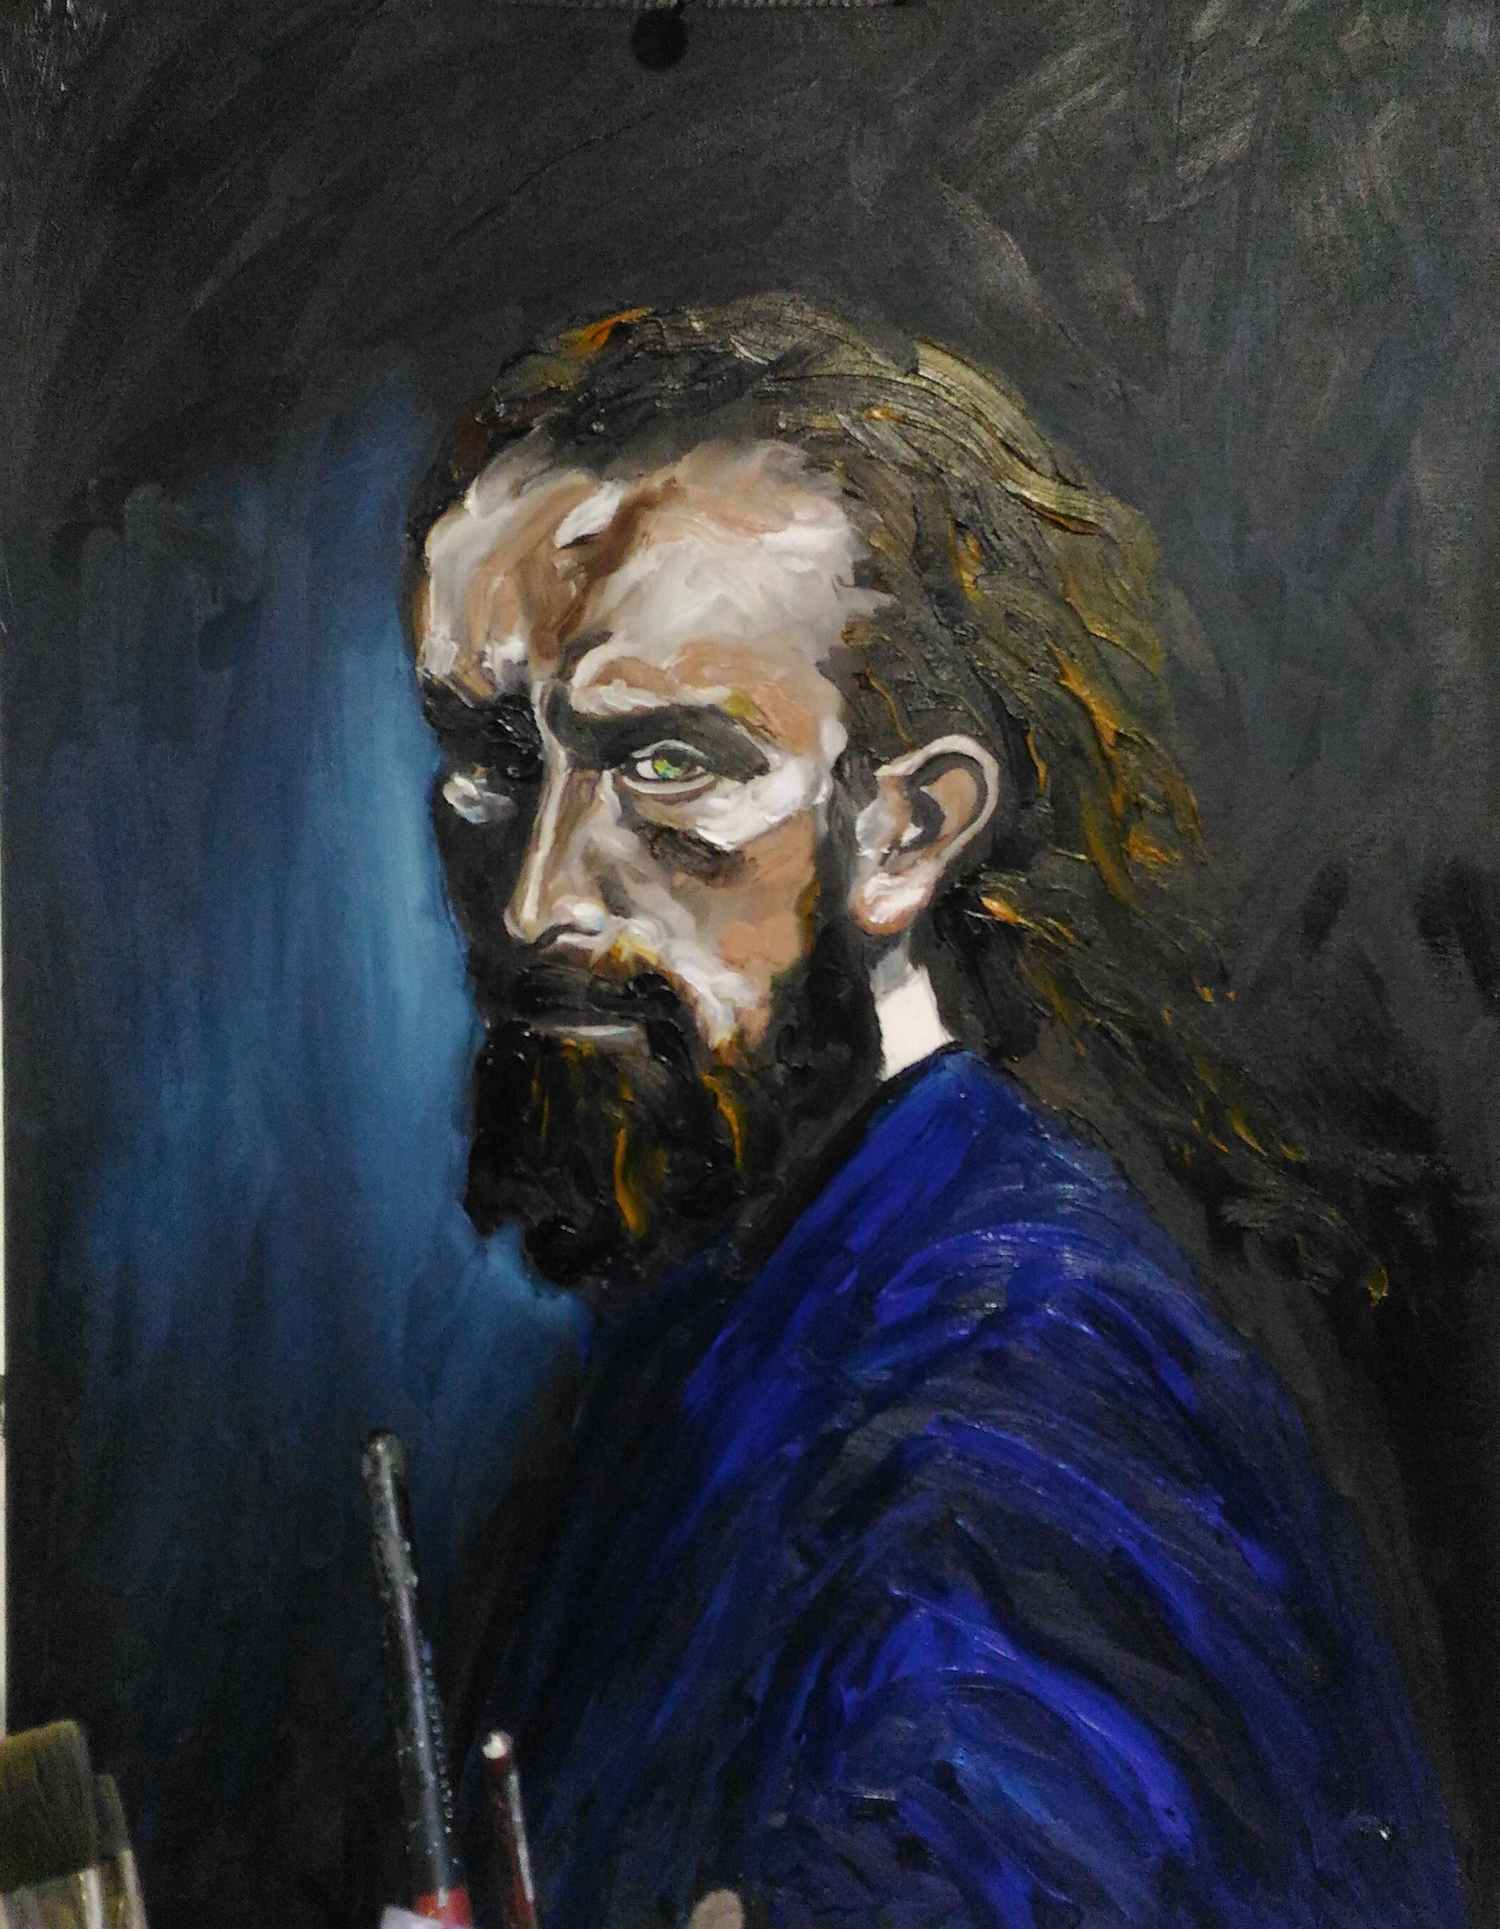 Portrait de l'homme en bleu,Tableaux contemporains,artiste peintre Florence
GAUTIER,oeuvre contemporaine.